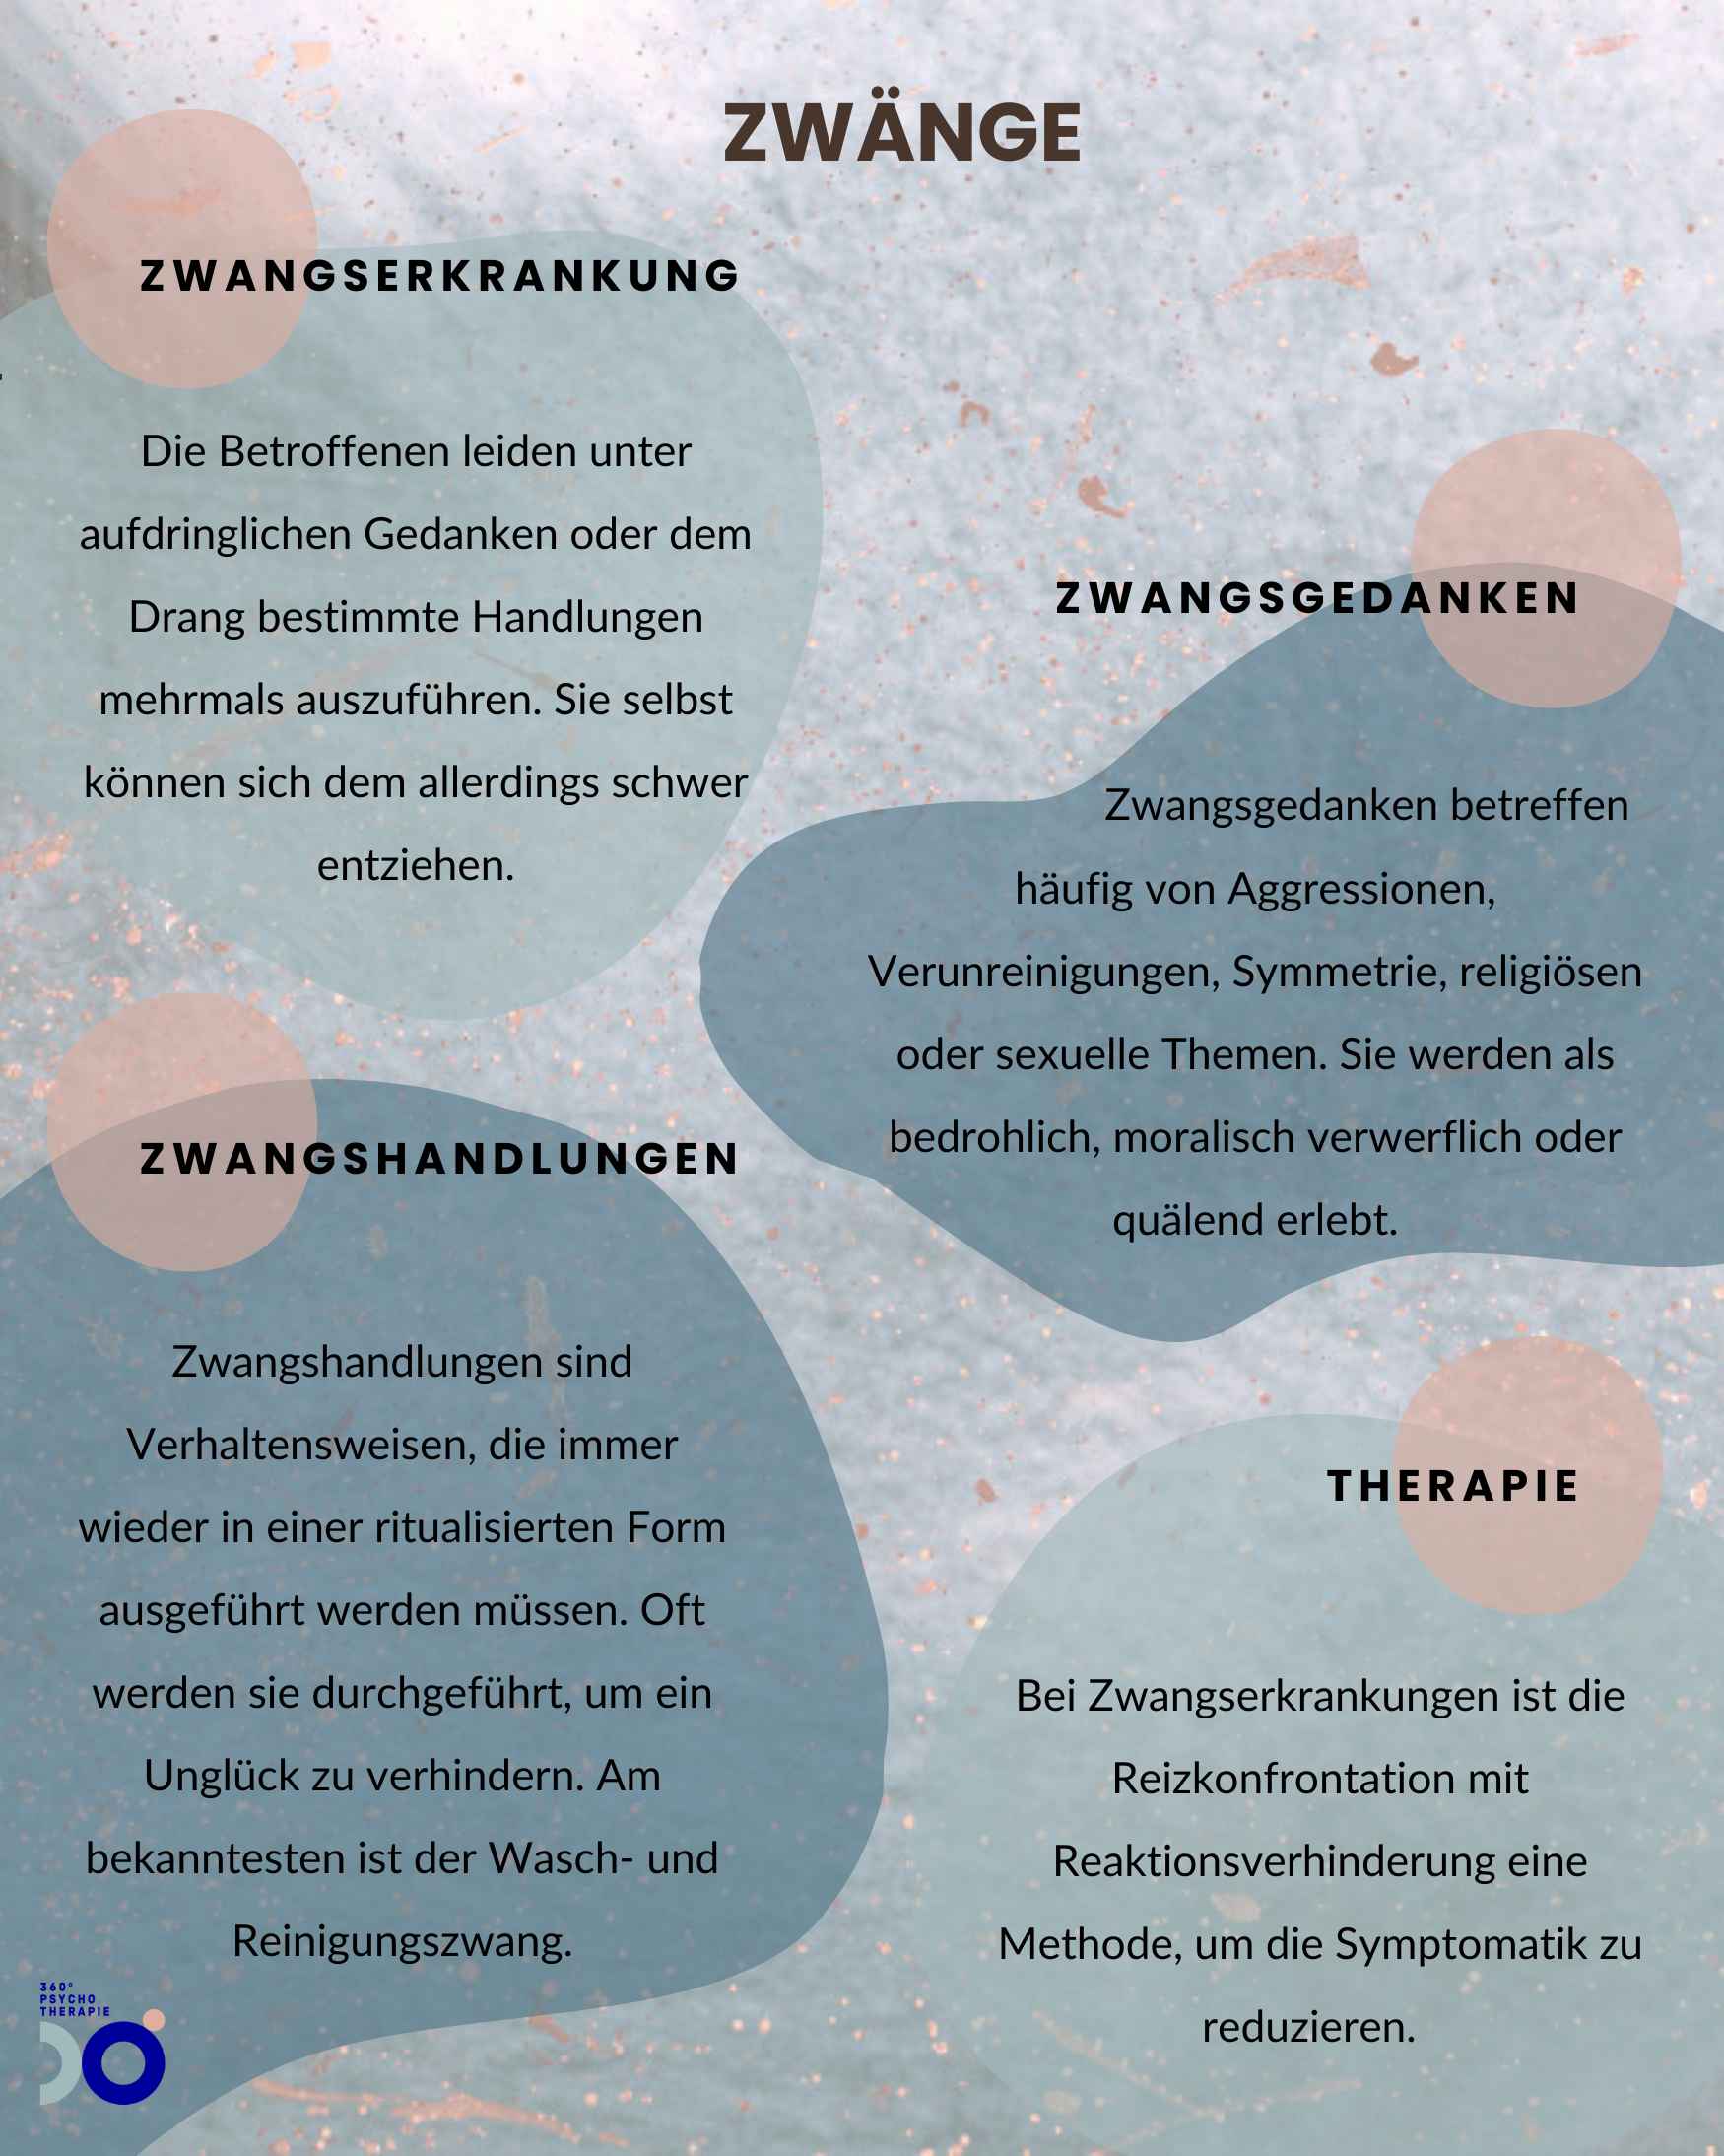 Infografik zum Thema Zwänge als Zwangspersönlichkeitsstörung mit Zwangsgedanken und der passenden Therapie.